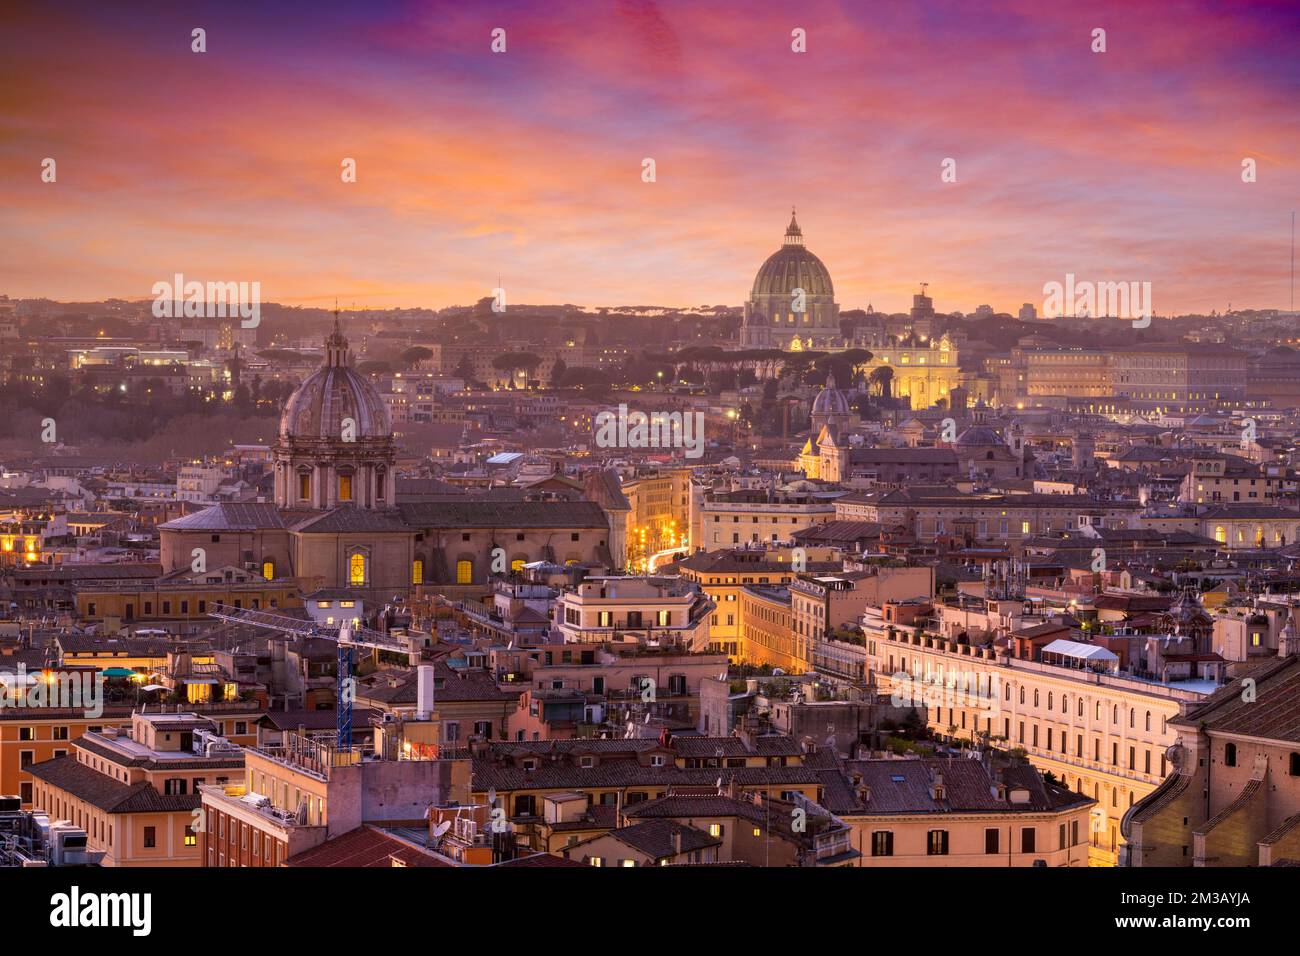 Rome, Italy cityscape at dusk. Stock Photo